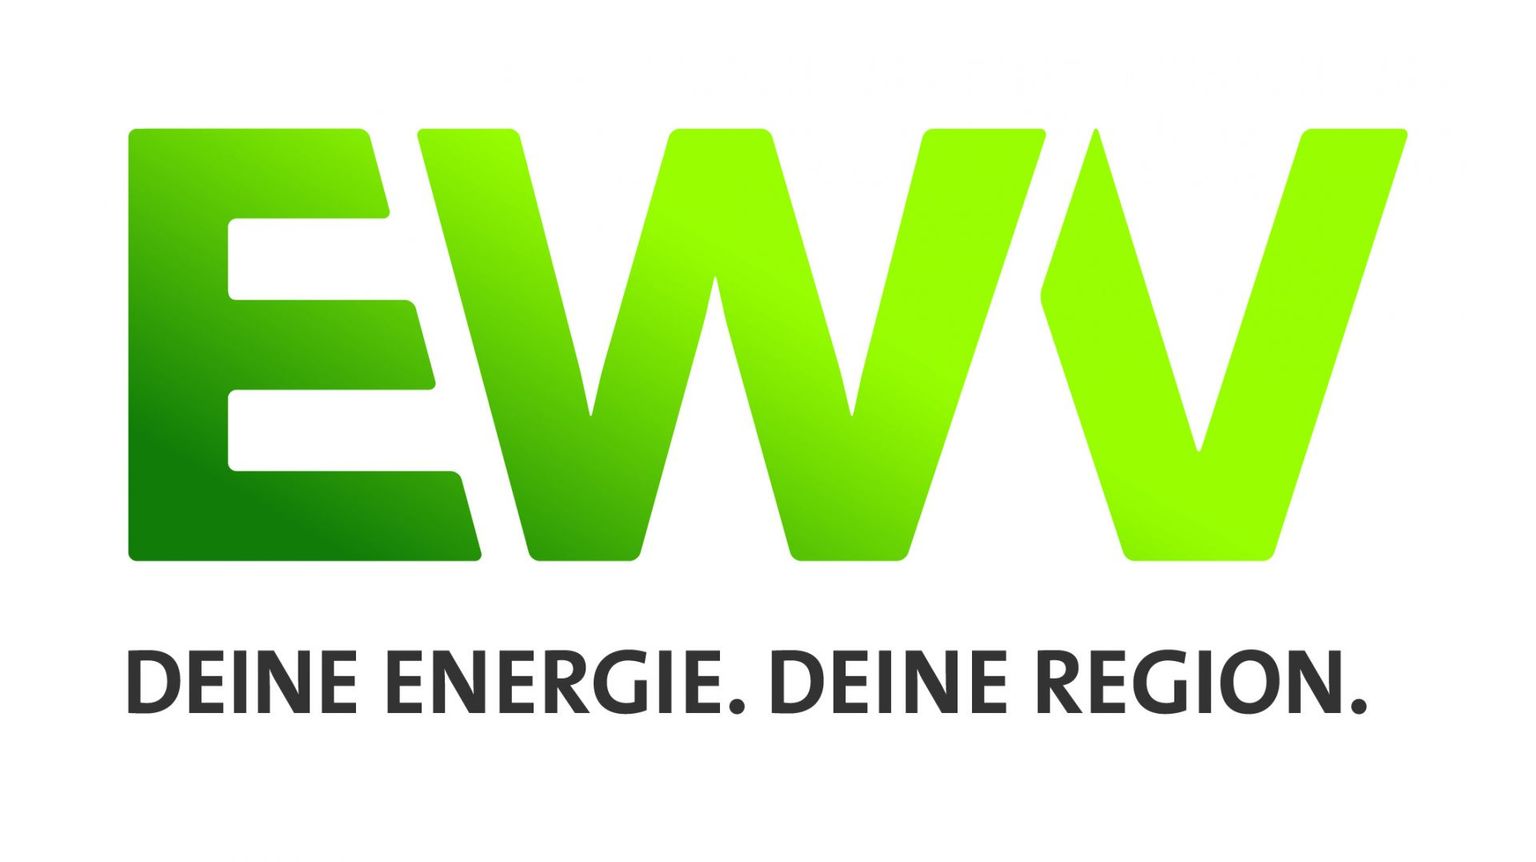 EWV Energie- und Wasser-Versorgung GmbH